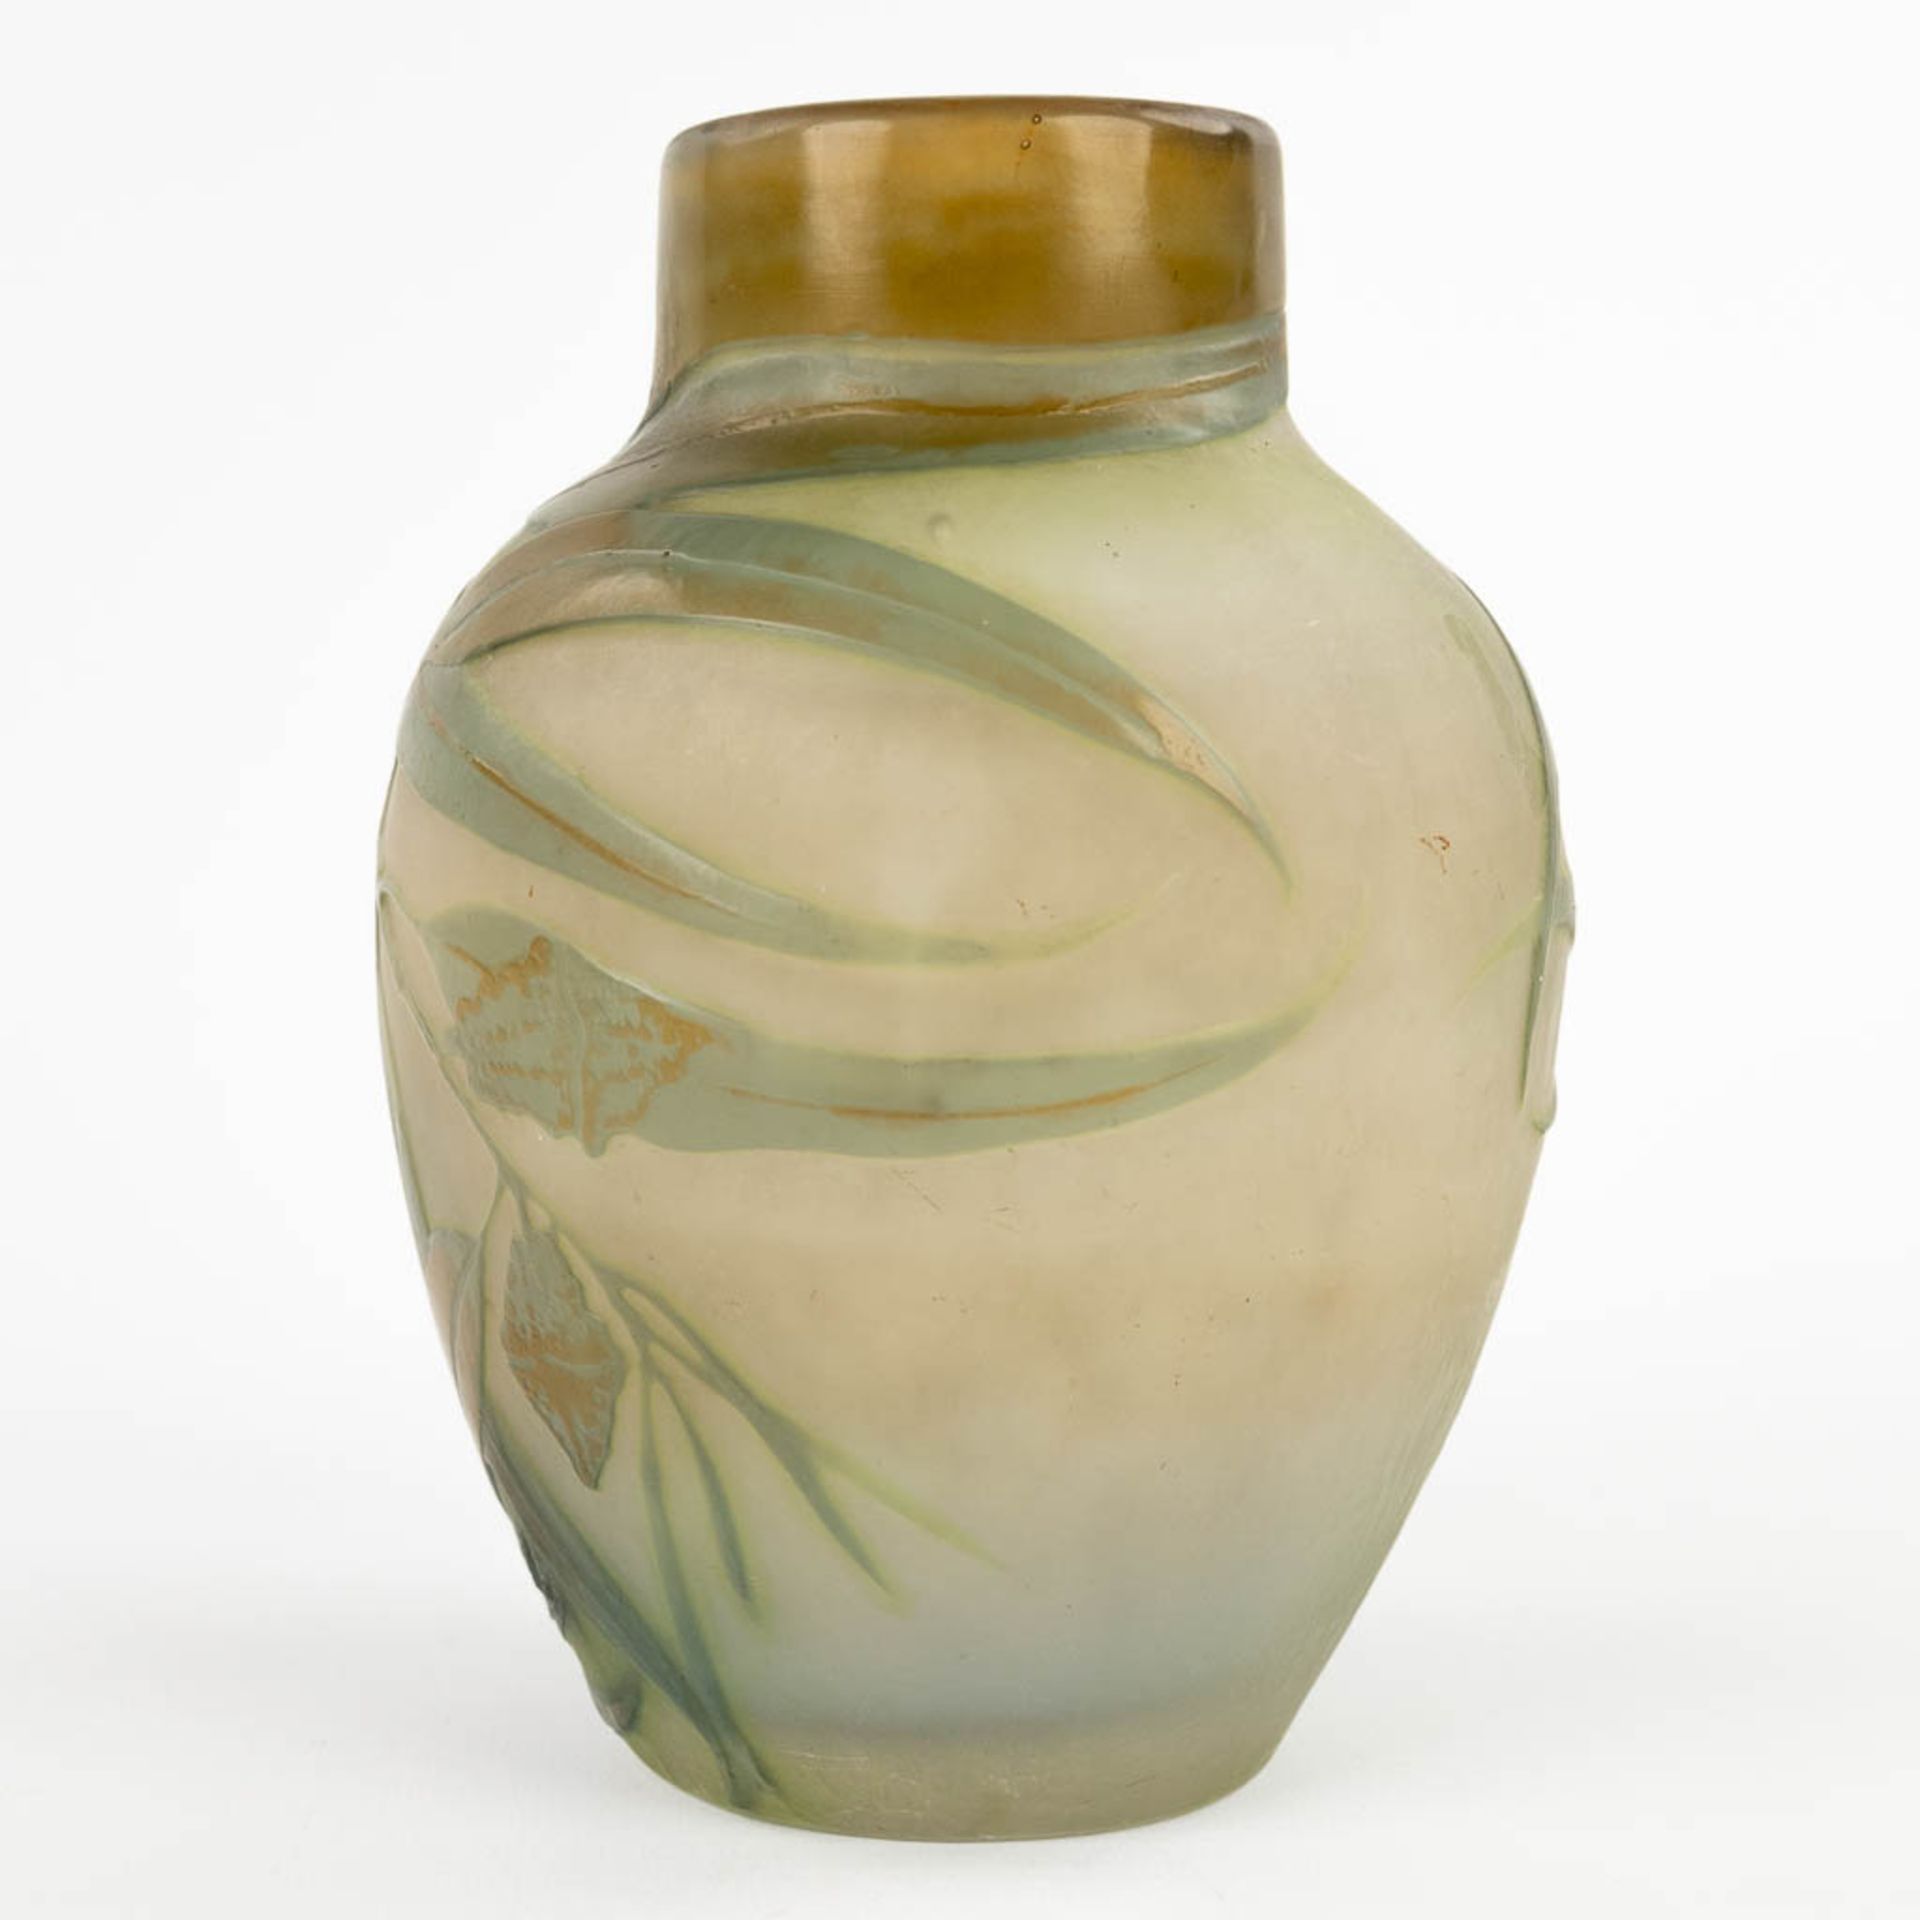 Emile GALLE (1846-1904) 'Vase' pate de verre glass. Circa 1905-1908. (H:18 x D:13 cm) - Bild 6 aus 10